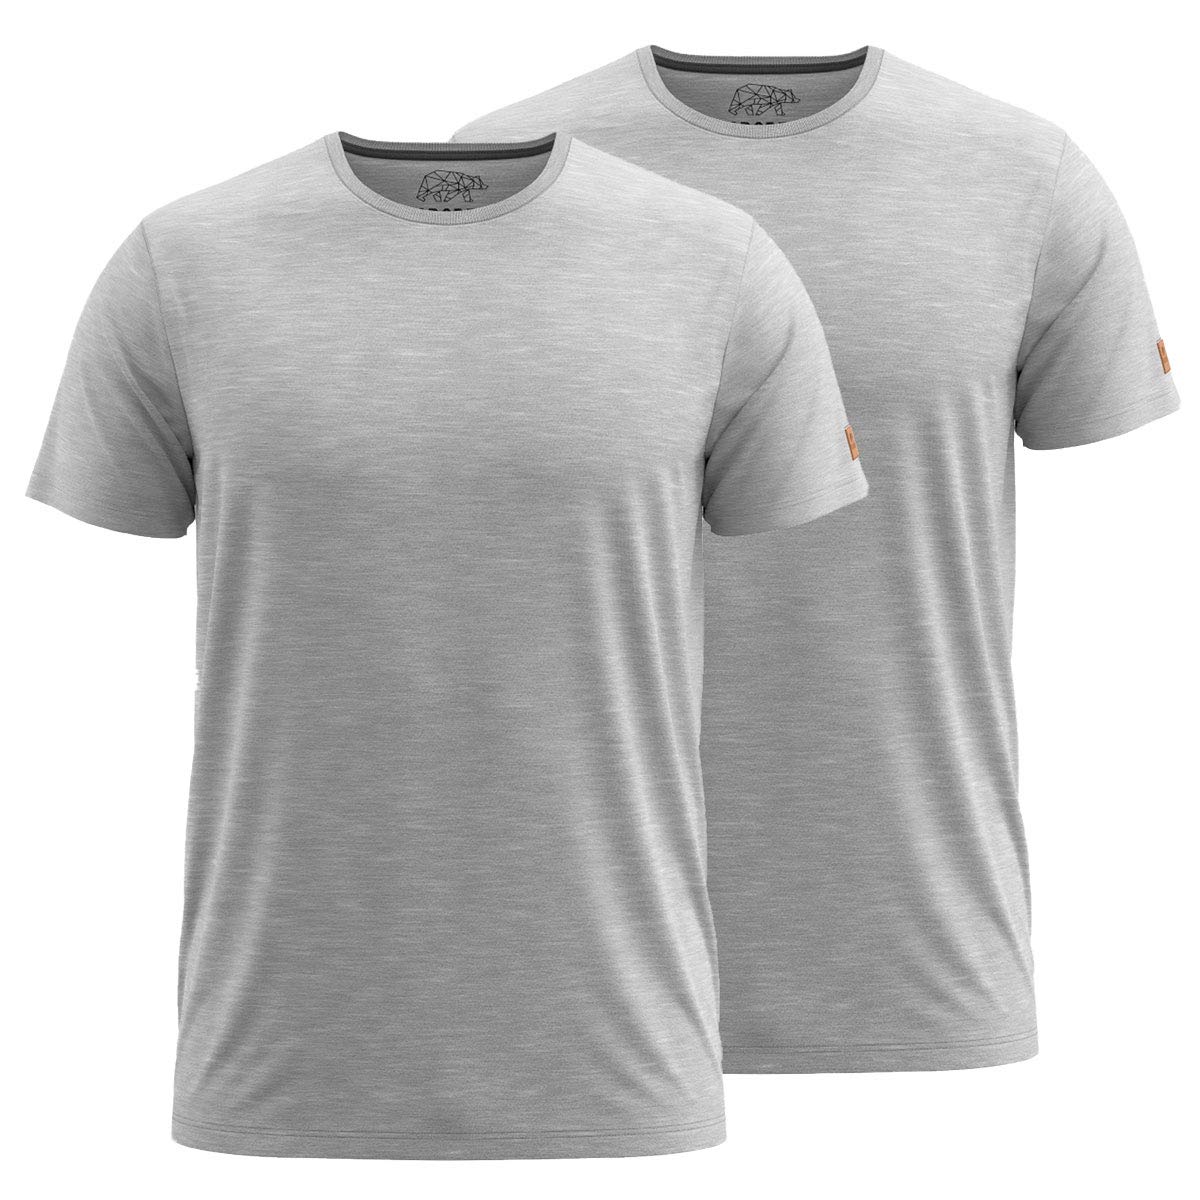 FORSBERG T-Shirt Doppelpack zum Sparpreis einfarbig Rundhals hochwertig robust bequem guter Schnitt, Farbe:hellgrau, Größe:XL